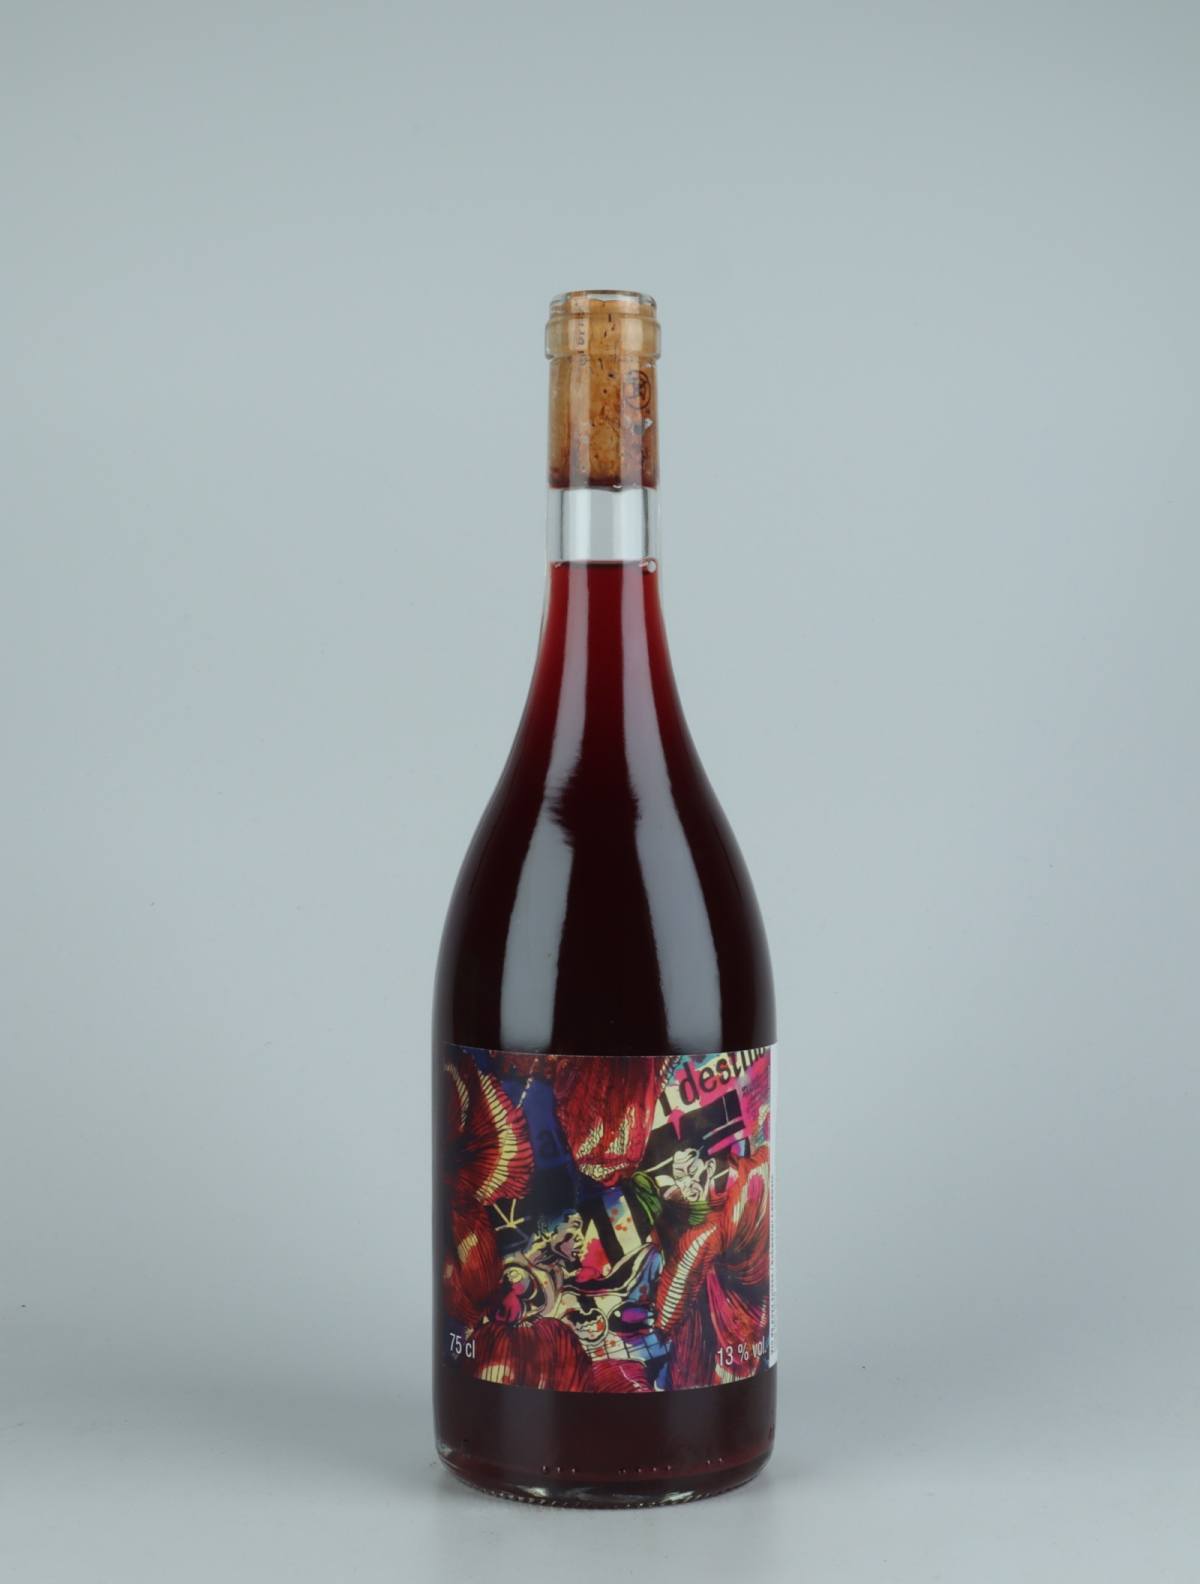 En flaske 2019 Pinot Noir Rødvin fra Les Vins du Fab, Neuchâtel i Schweiz